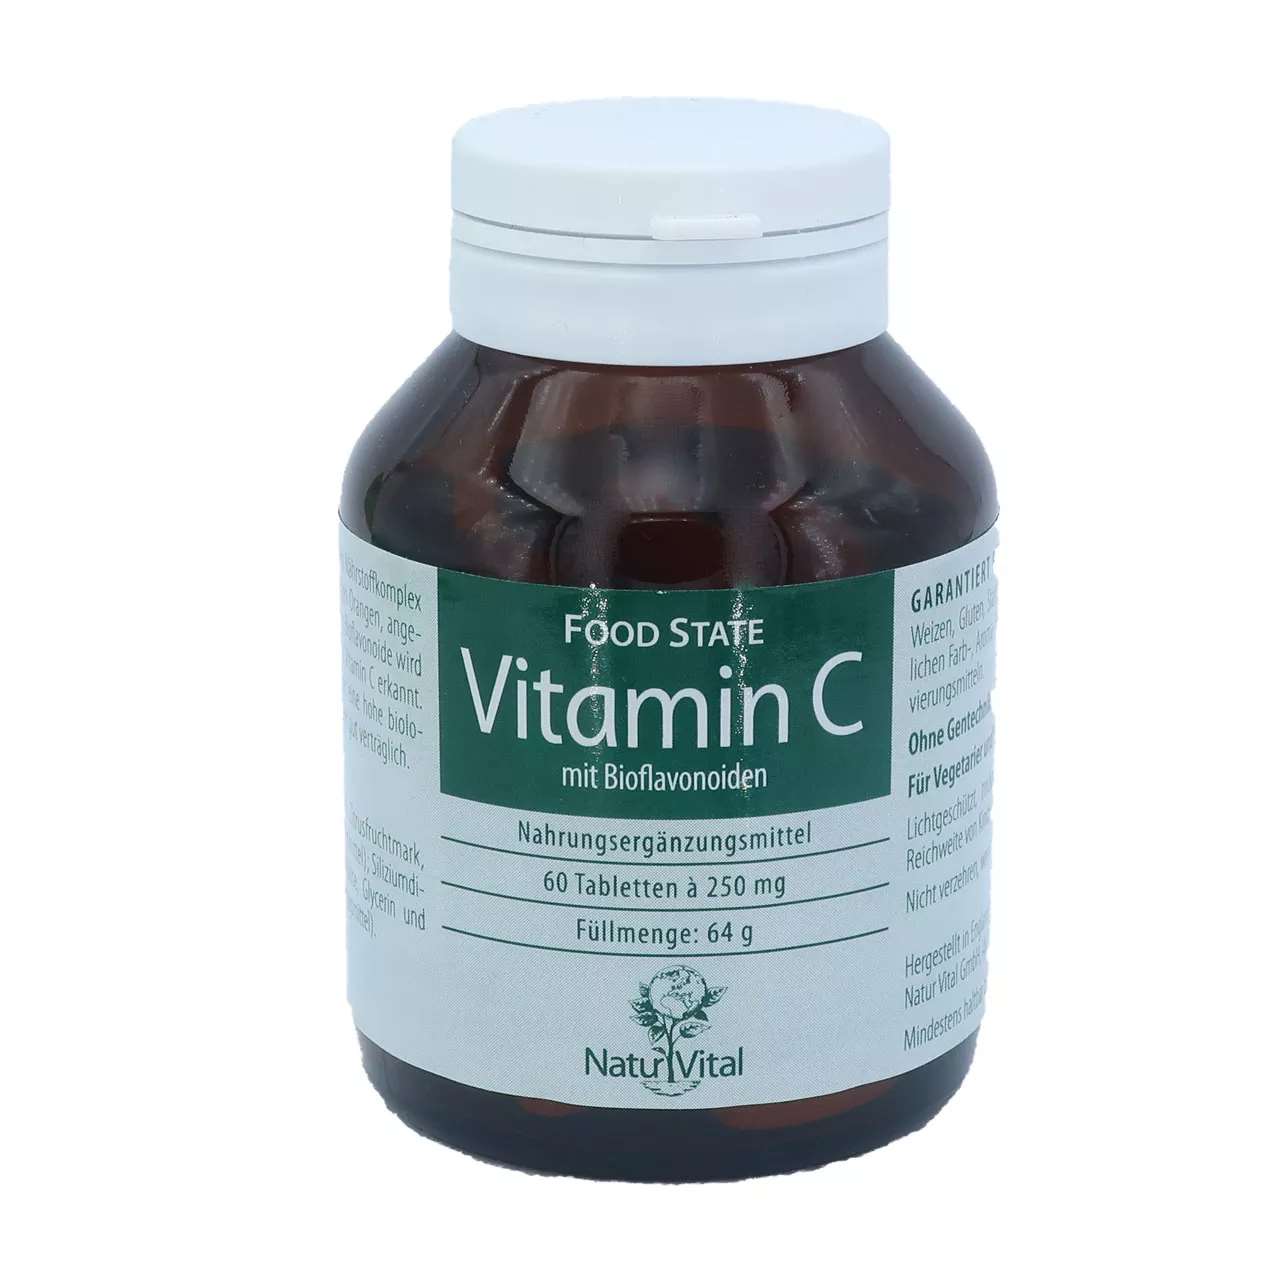 Vitamin C mit Bioflavonoiden von Natur Vital beinhaltet 60 Tabletten